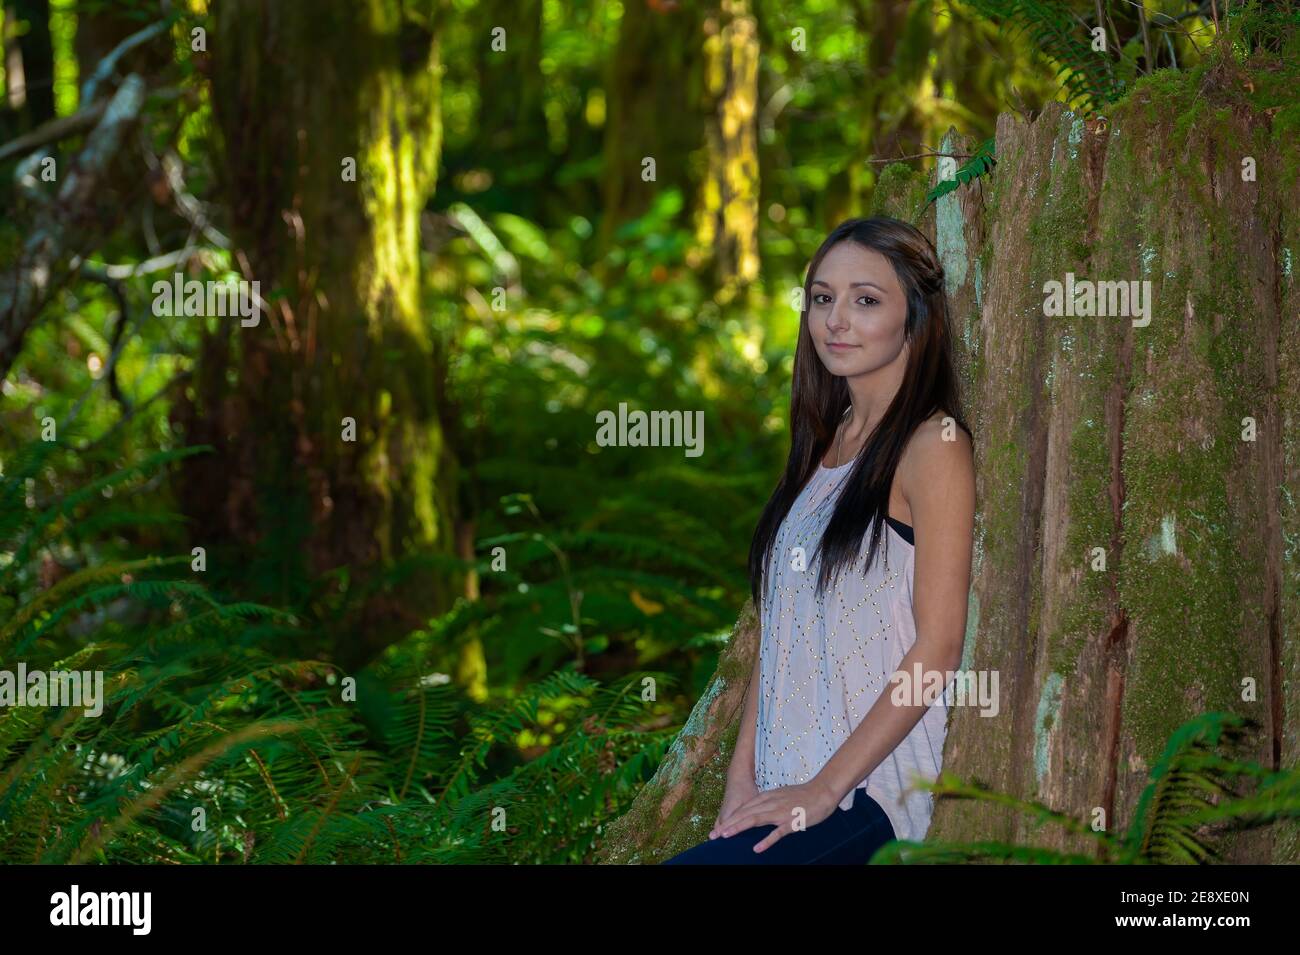 Una giovane donna con lunghi capelli marroni si appoggia contro un albero in un ambiente forestale. Foto Stock